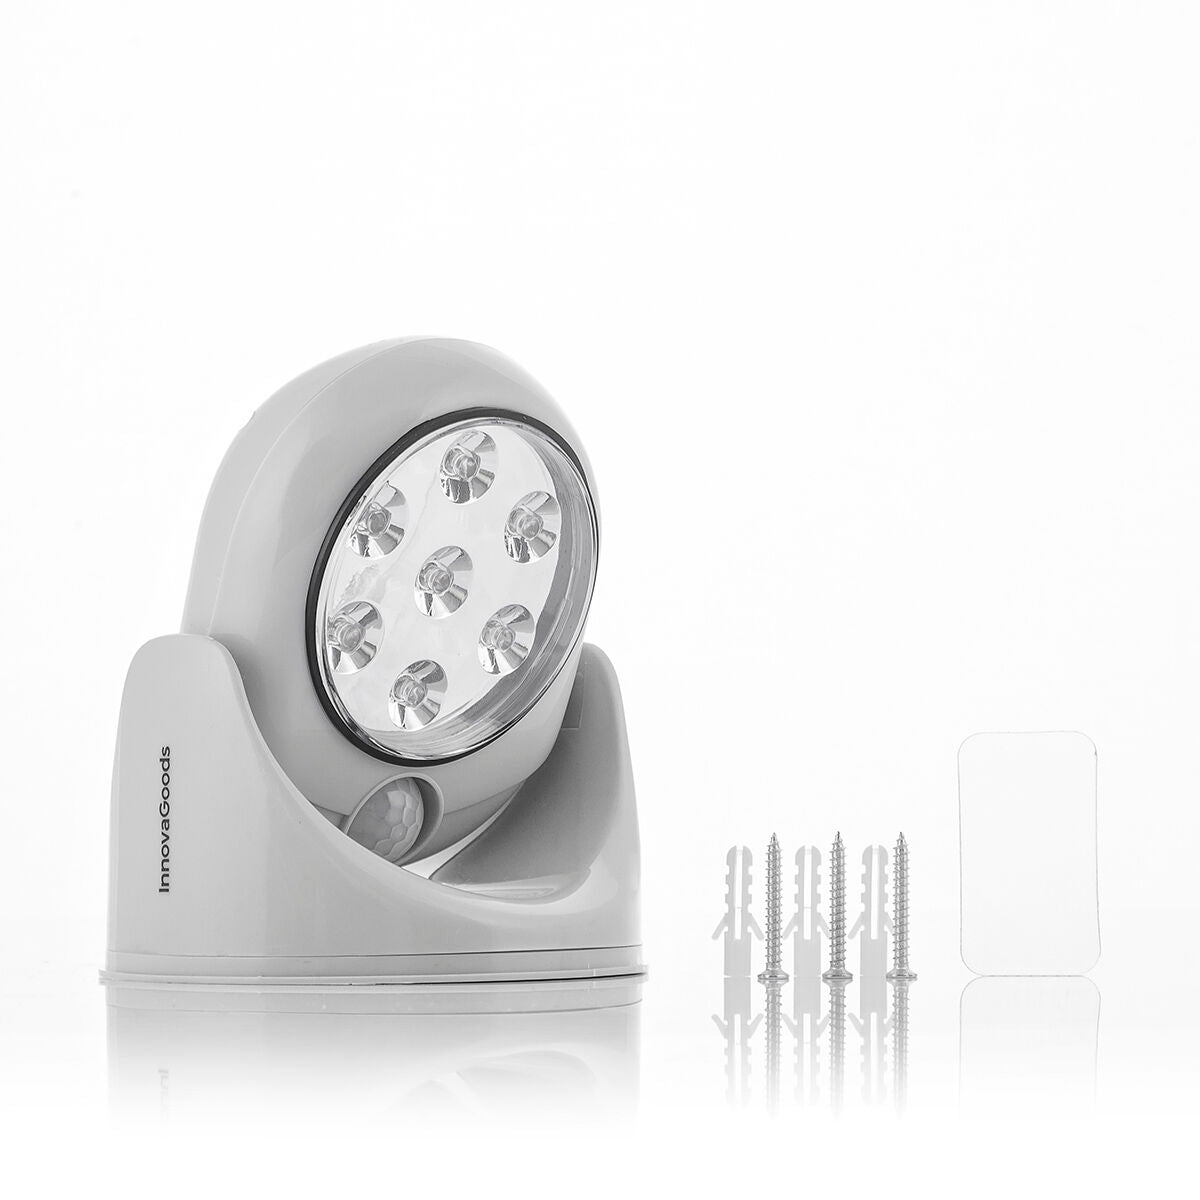 InnovaGoods® LED-Lampe mit Bewegungssensor Lumact 360º, mit 360 Grad LED-Licht und kompaktem Design. Nachtlicht, ideal für Zuhau